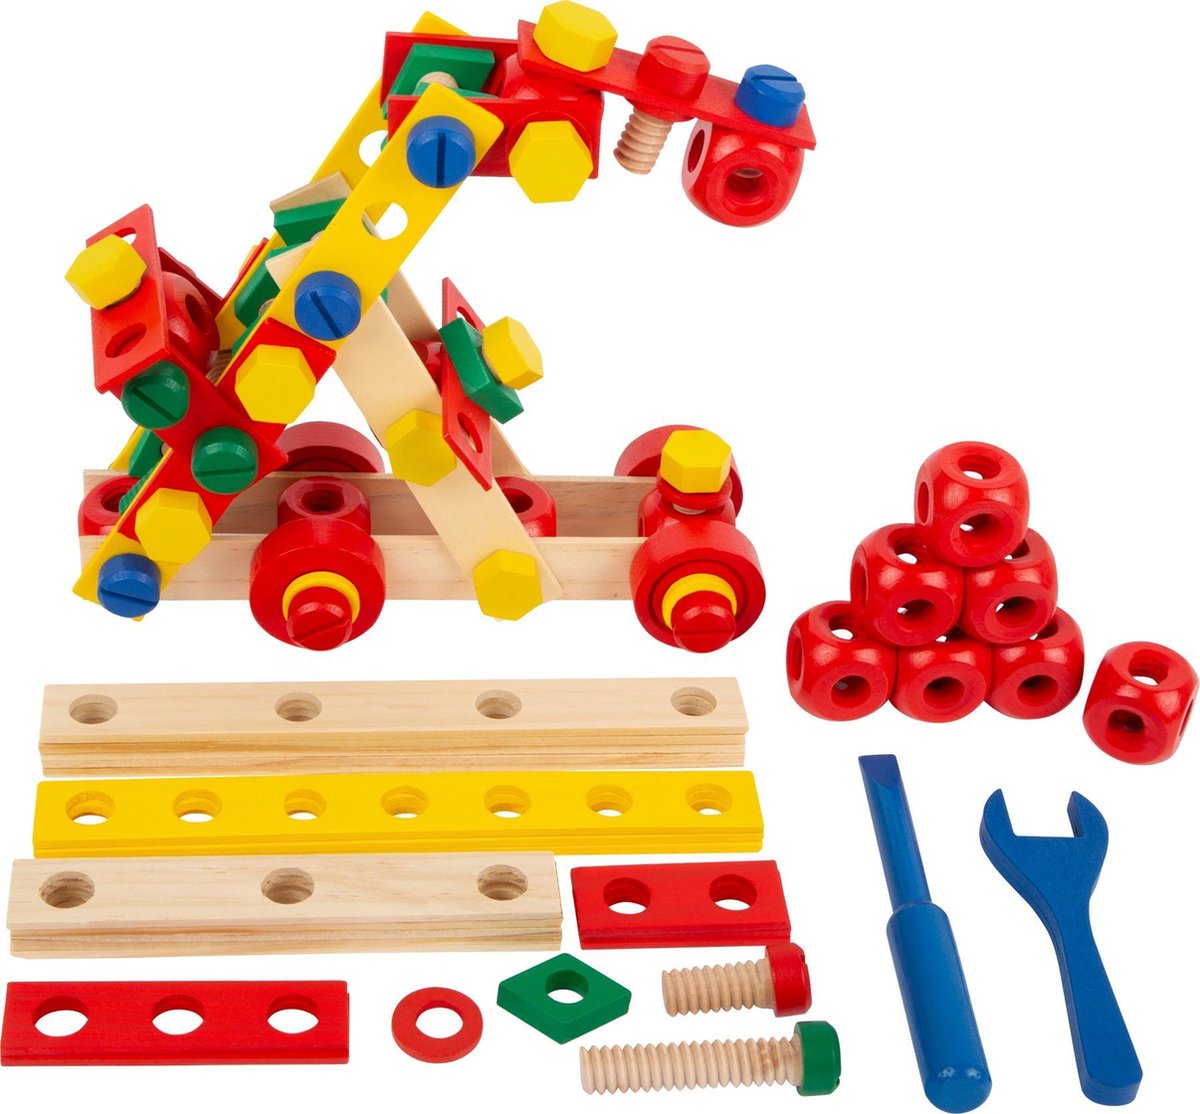 Outils de jouets en bois Chaise pour enfants - Vis Noix Bolts Set